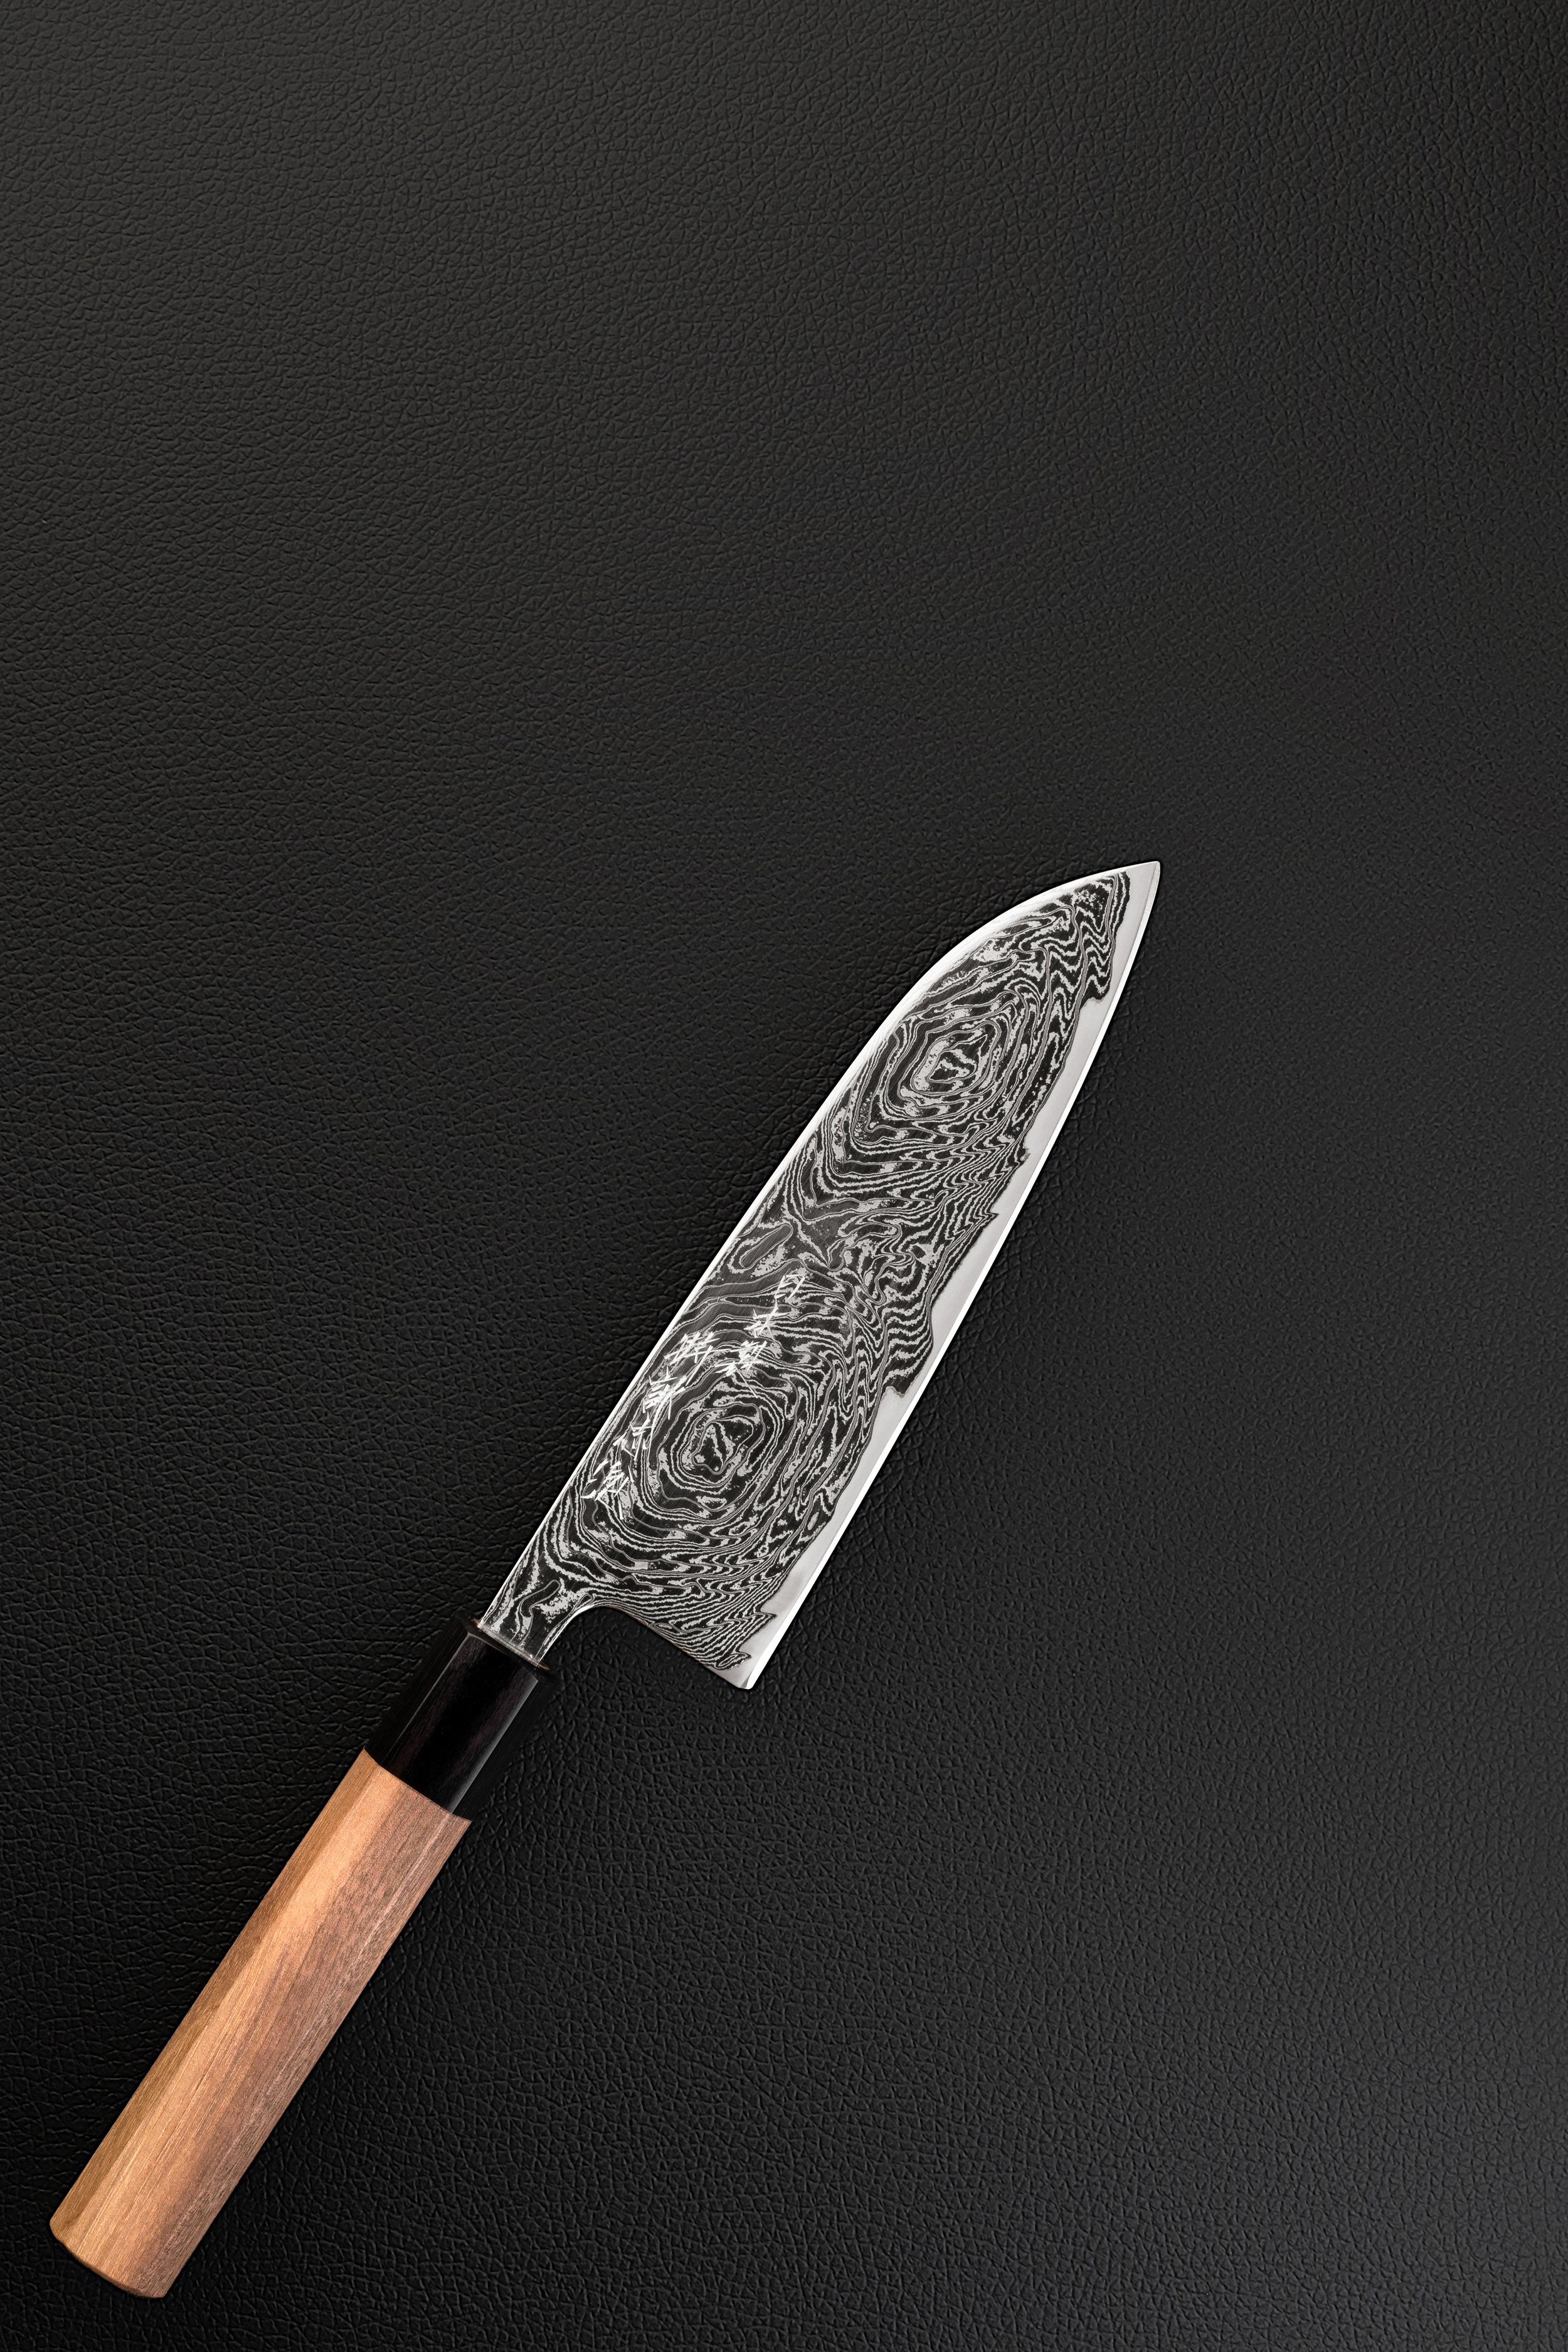 Tuto : utiliser un couteau de cuisine santoku